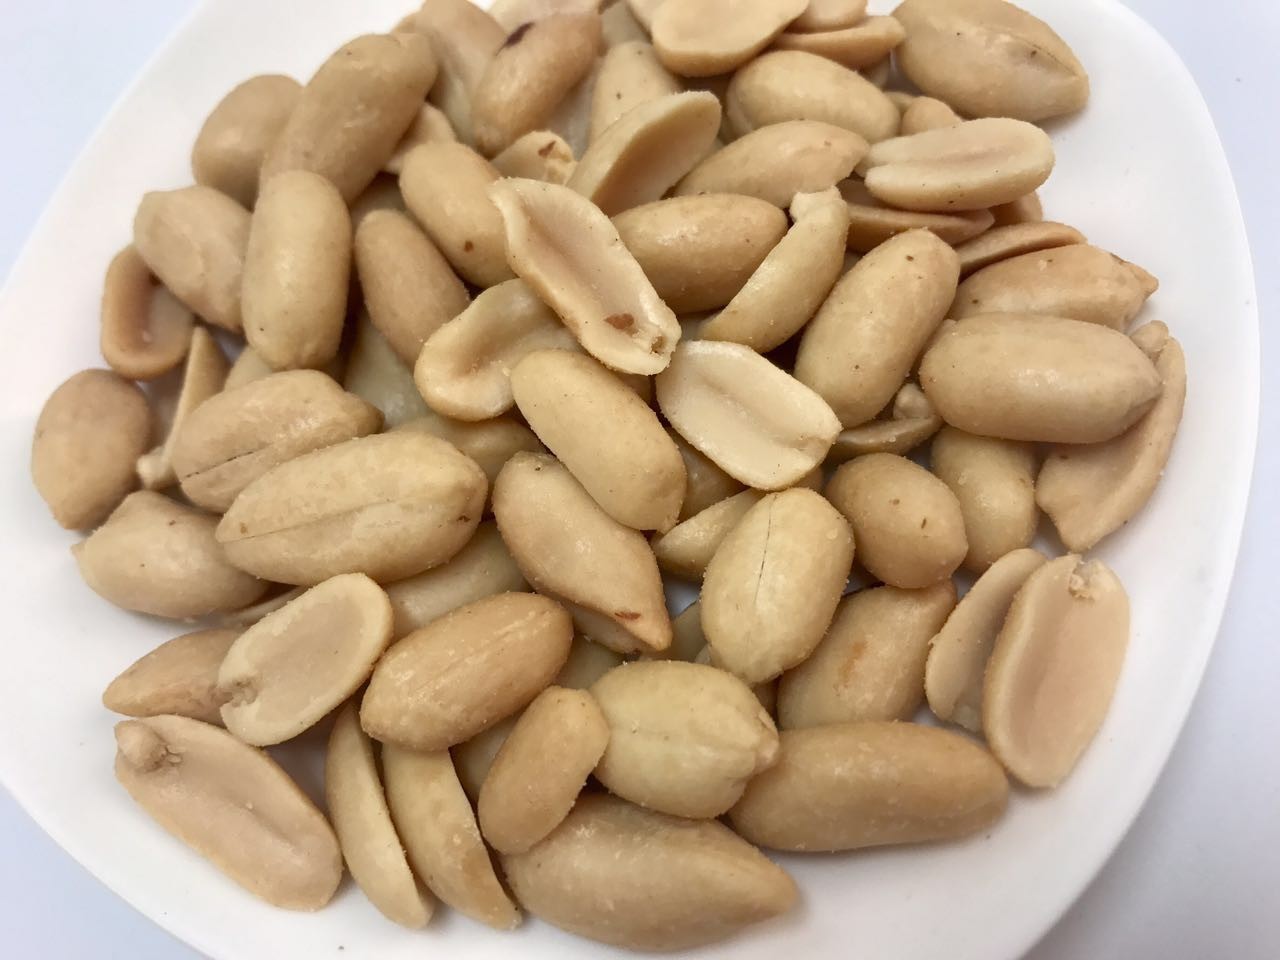 Non GMO Vegan Salted Fried Peanuts Natural Snack Crispy Zero Trans Fat for sale